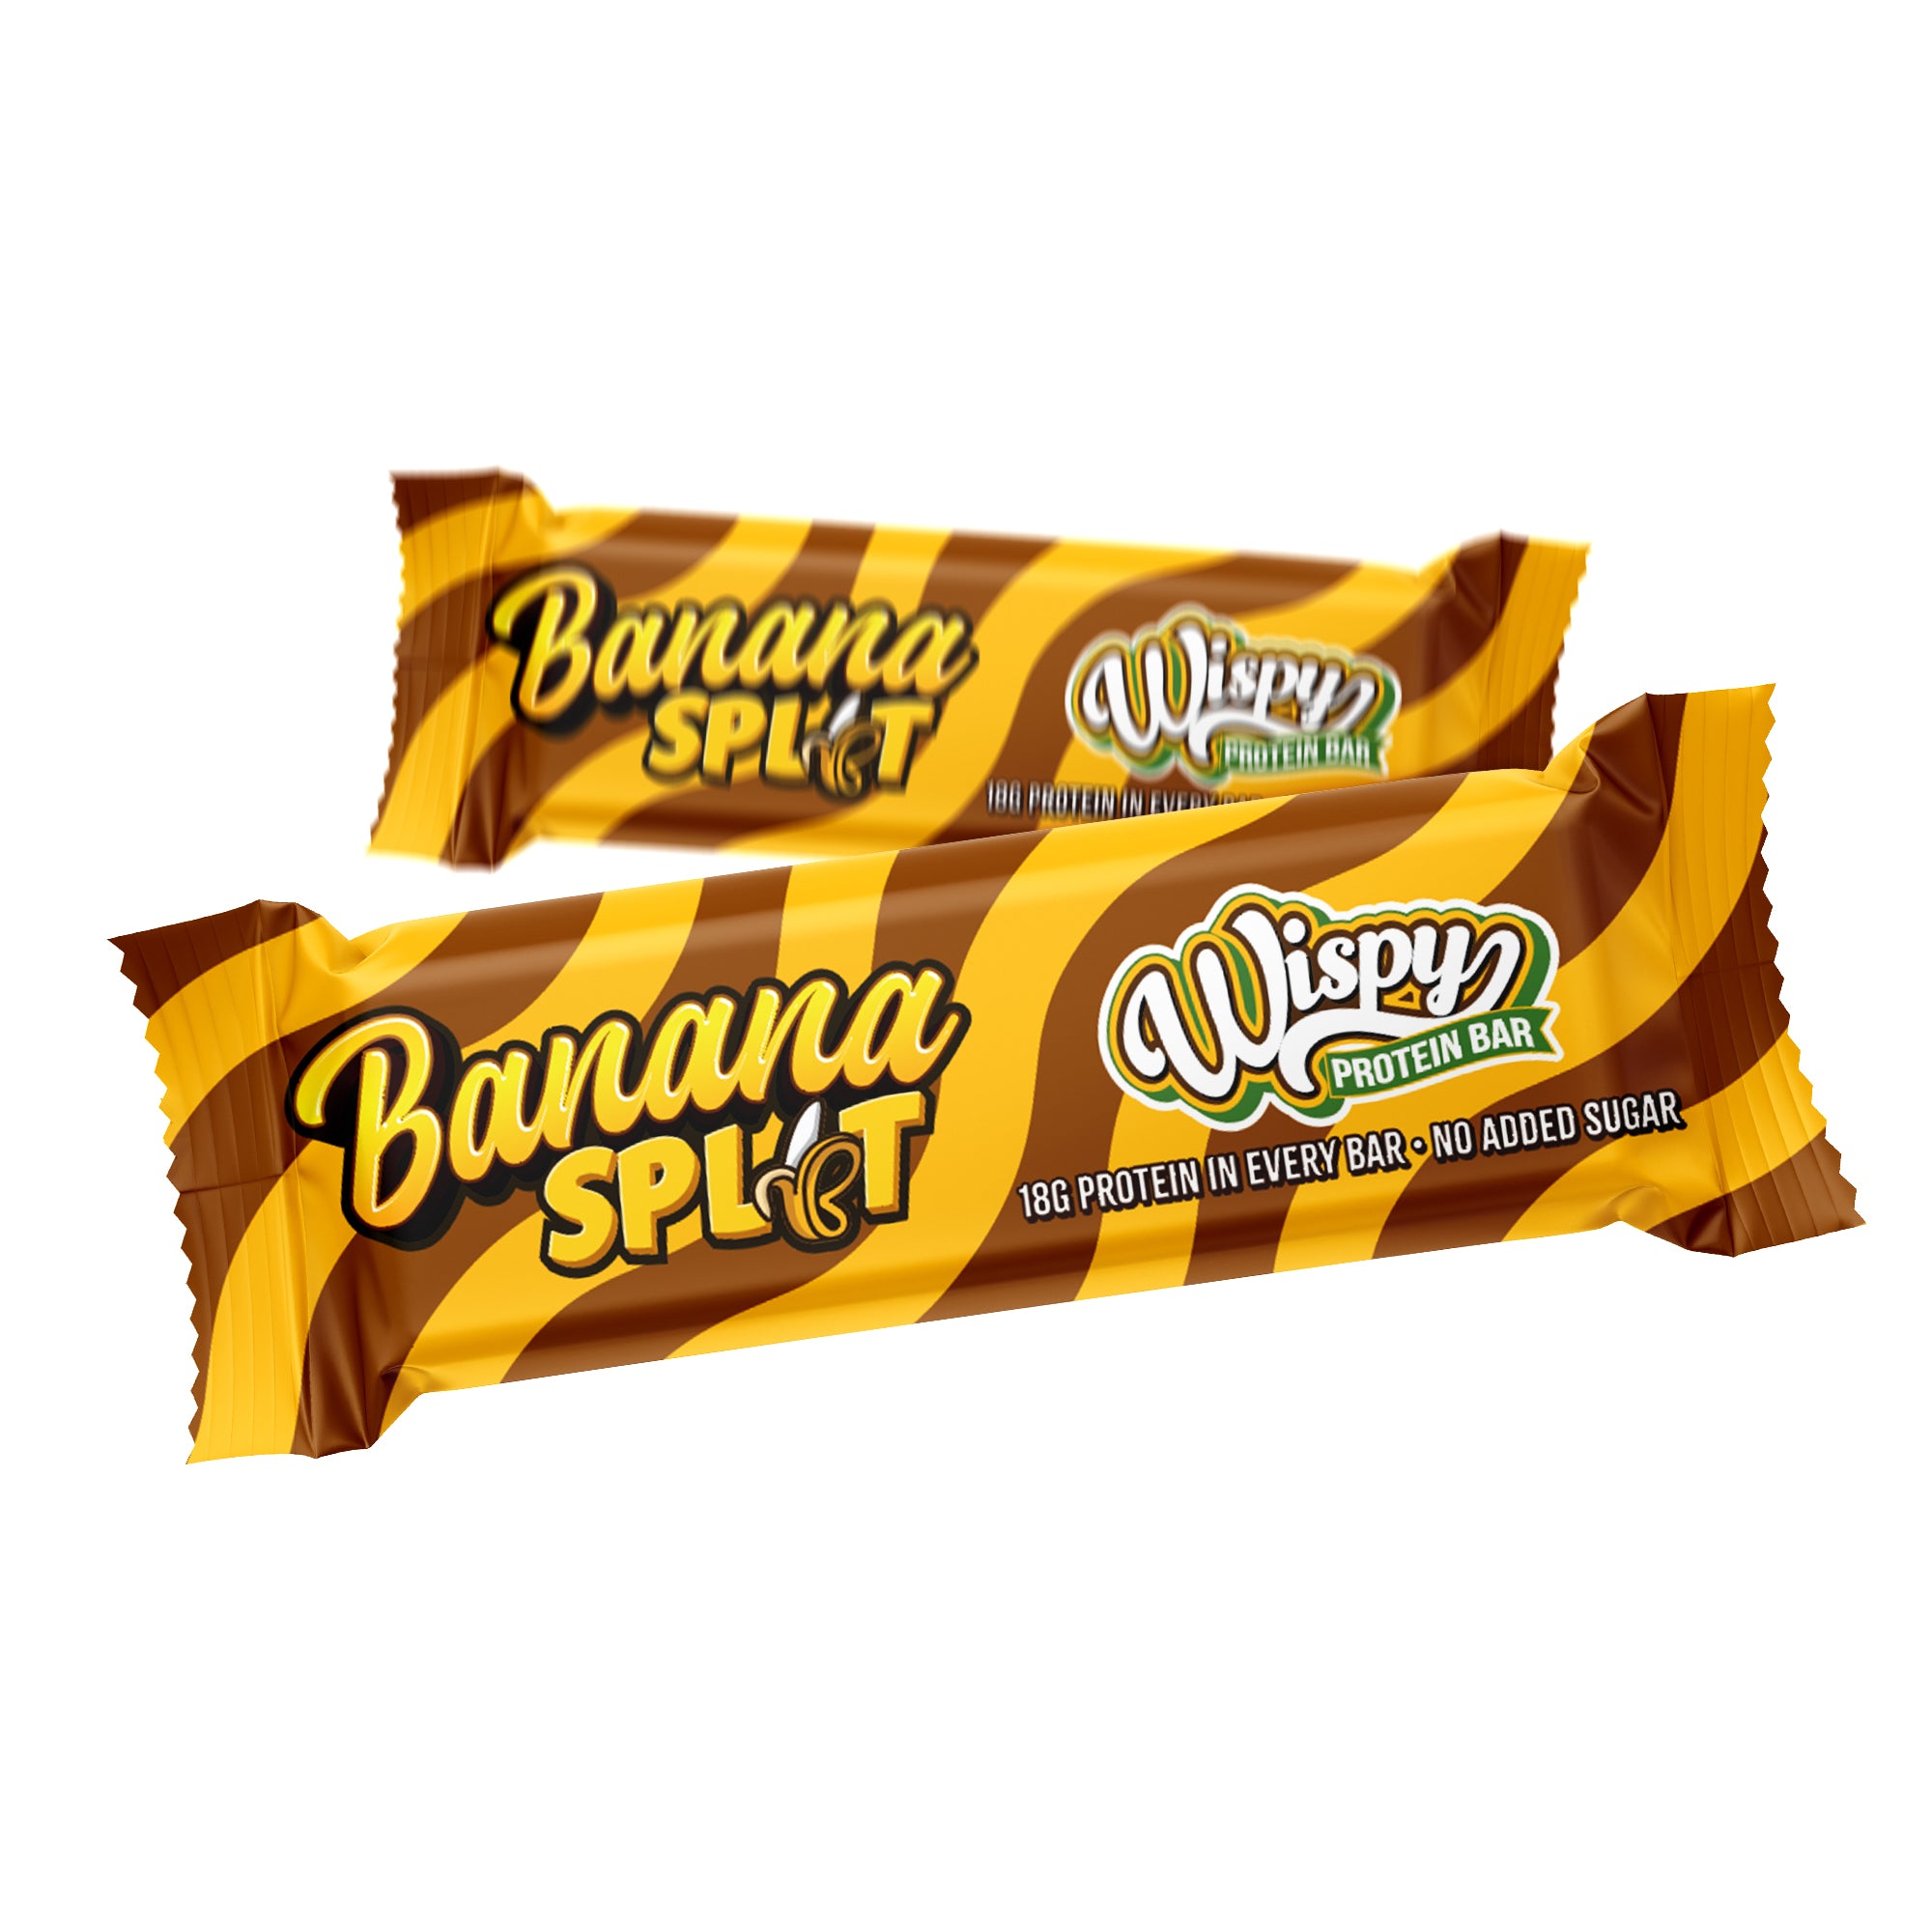 Billede af Wispy Protein Bar - Banana Split (55g)